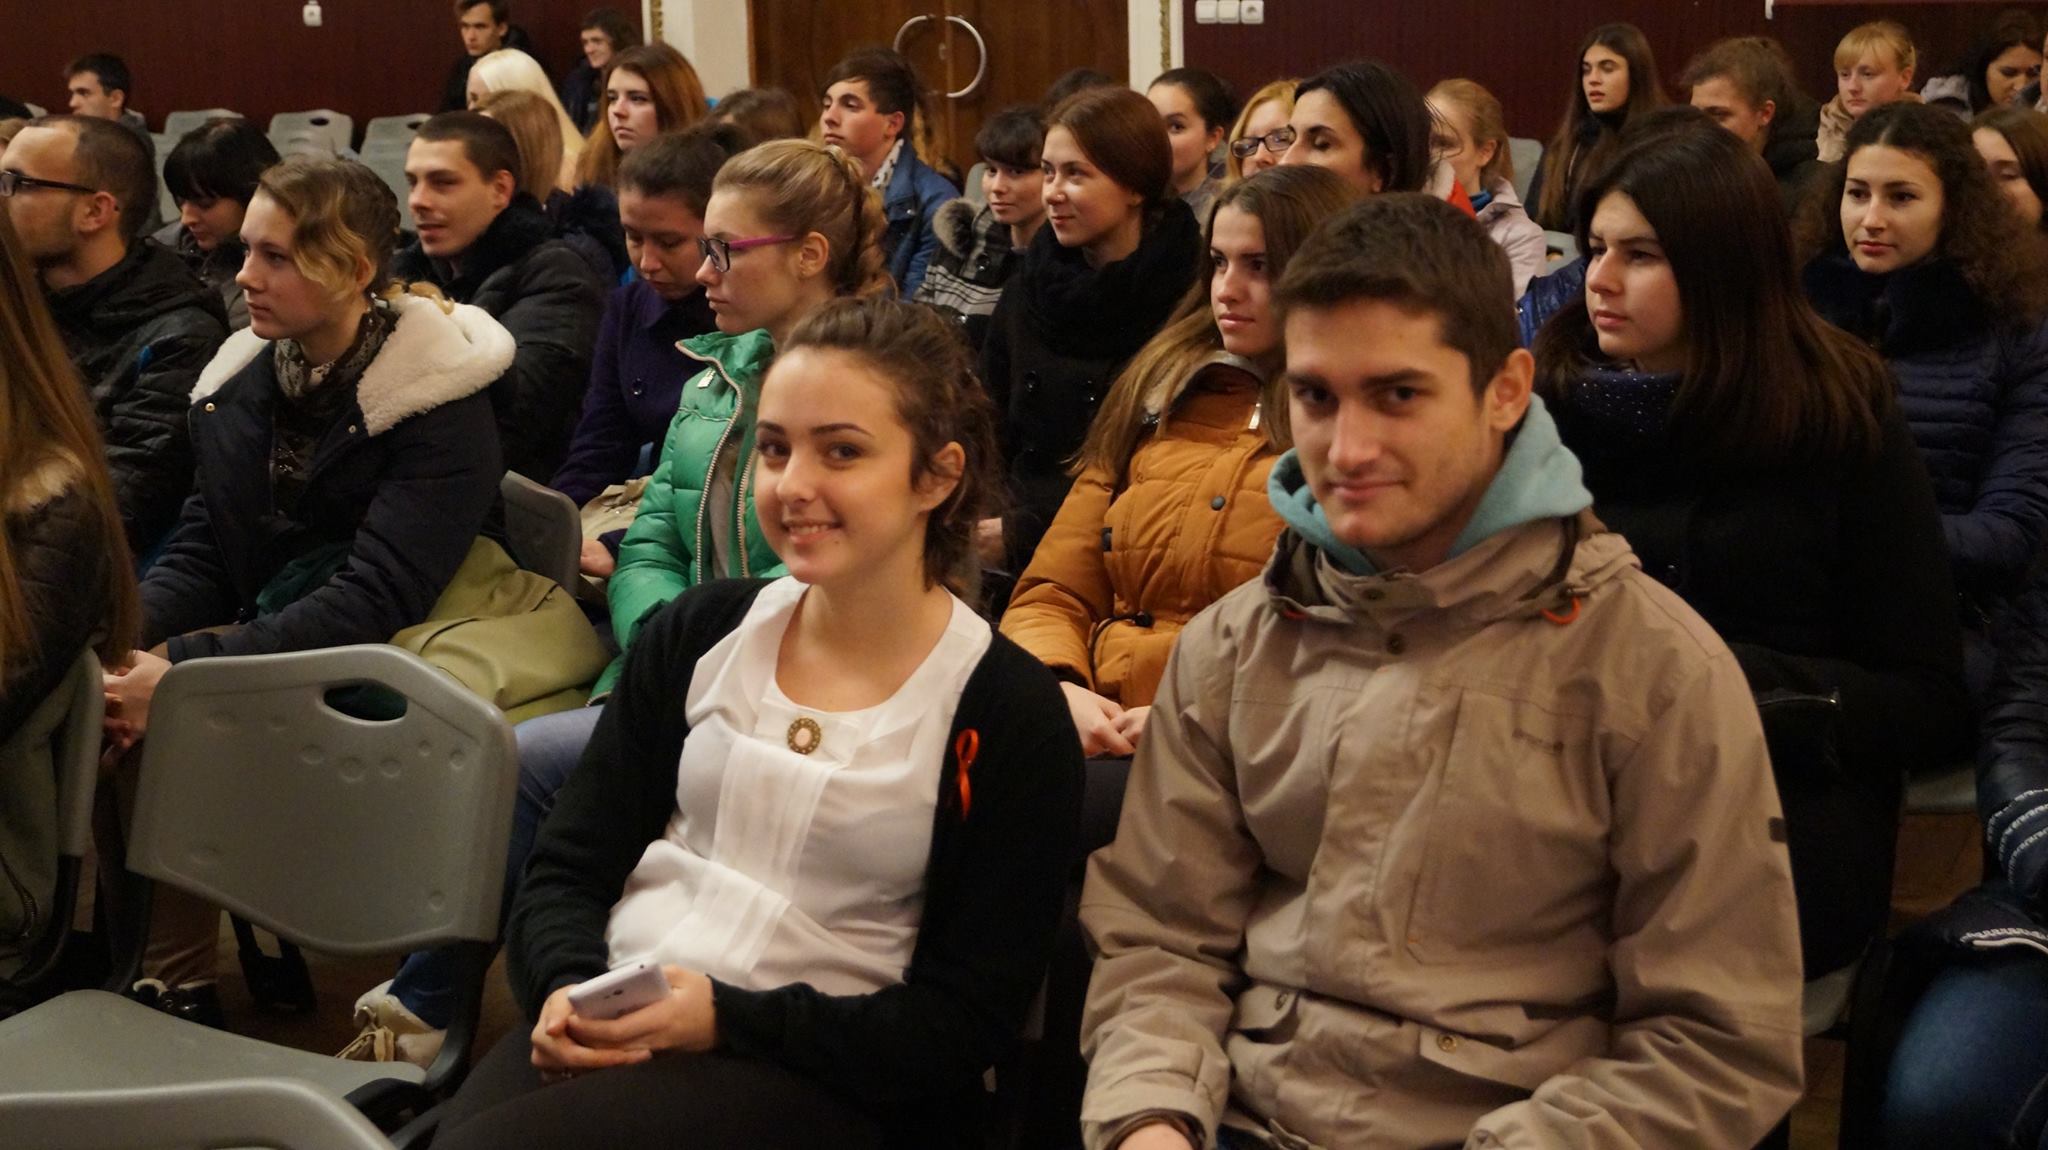 XII Путешествующий фестиваль документального кино про права человека Docudays UA прибыл в Бердянск - картинка 9